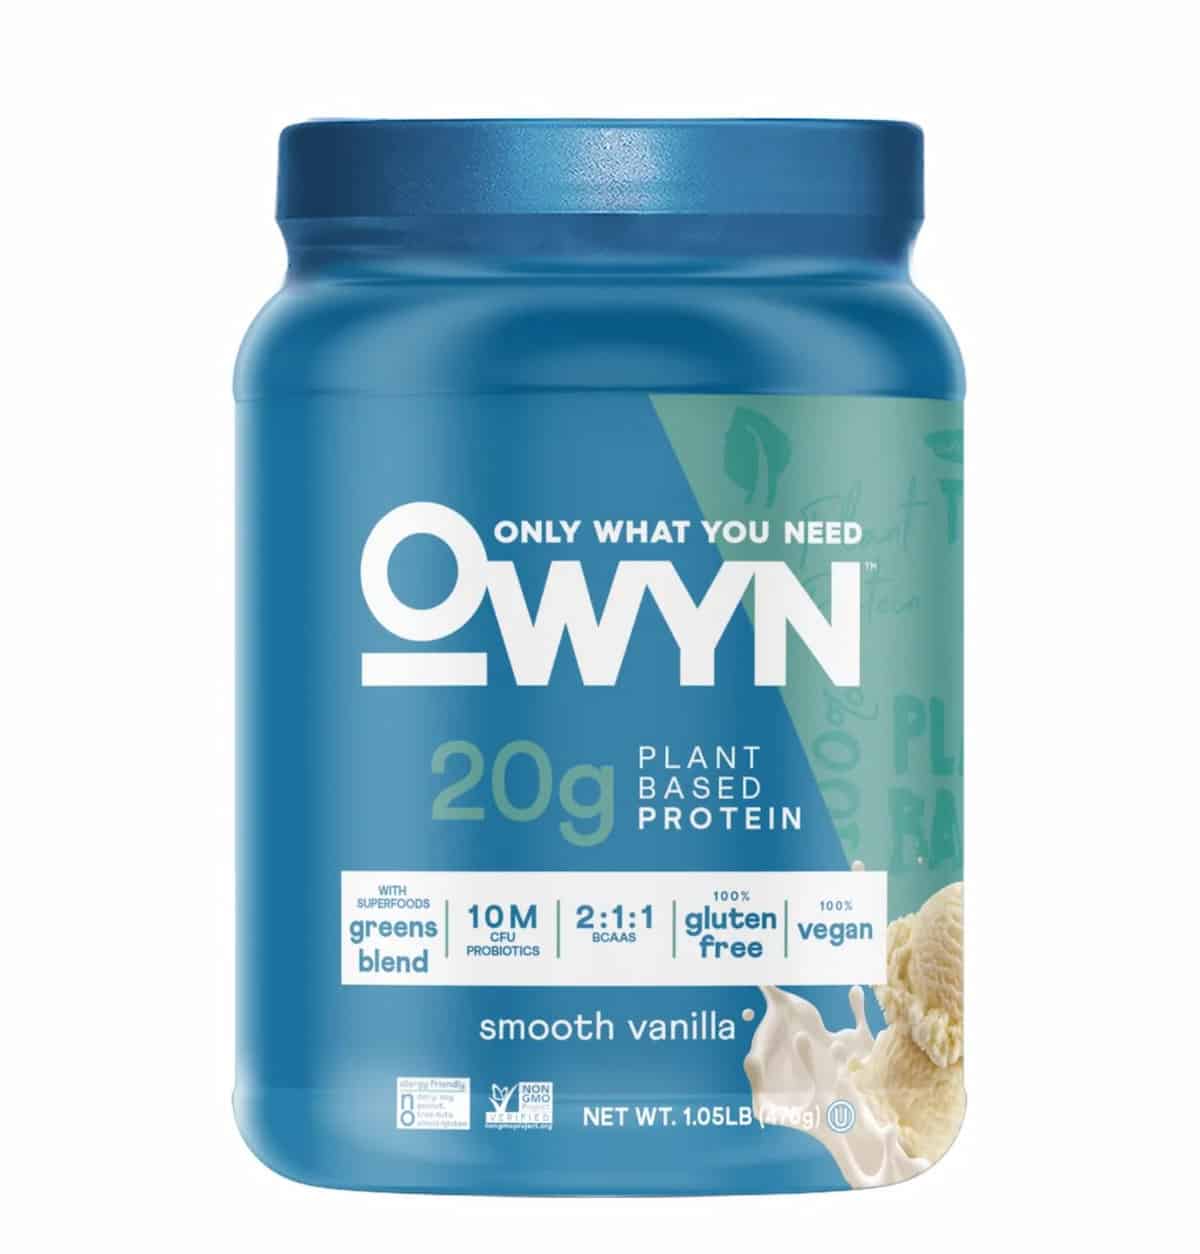 Owyn protein powder. 